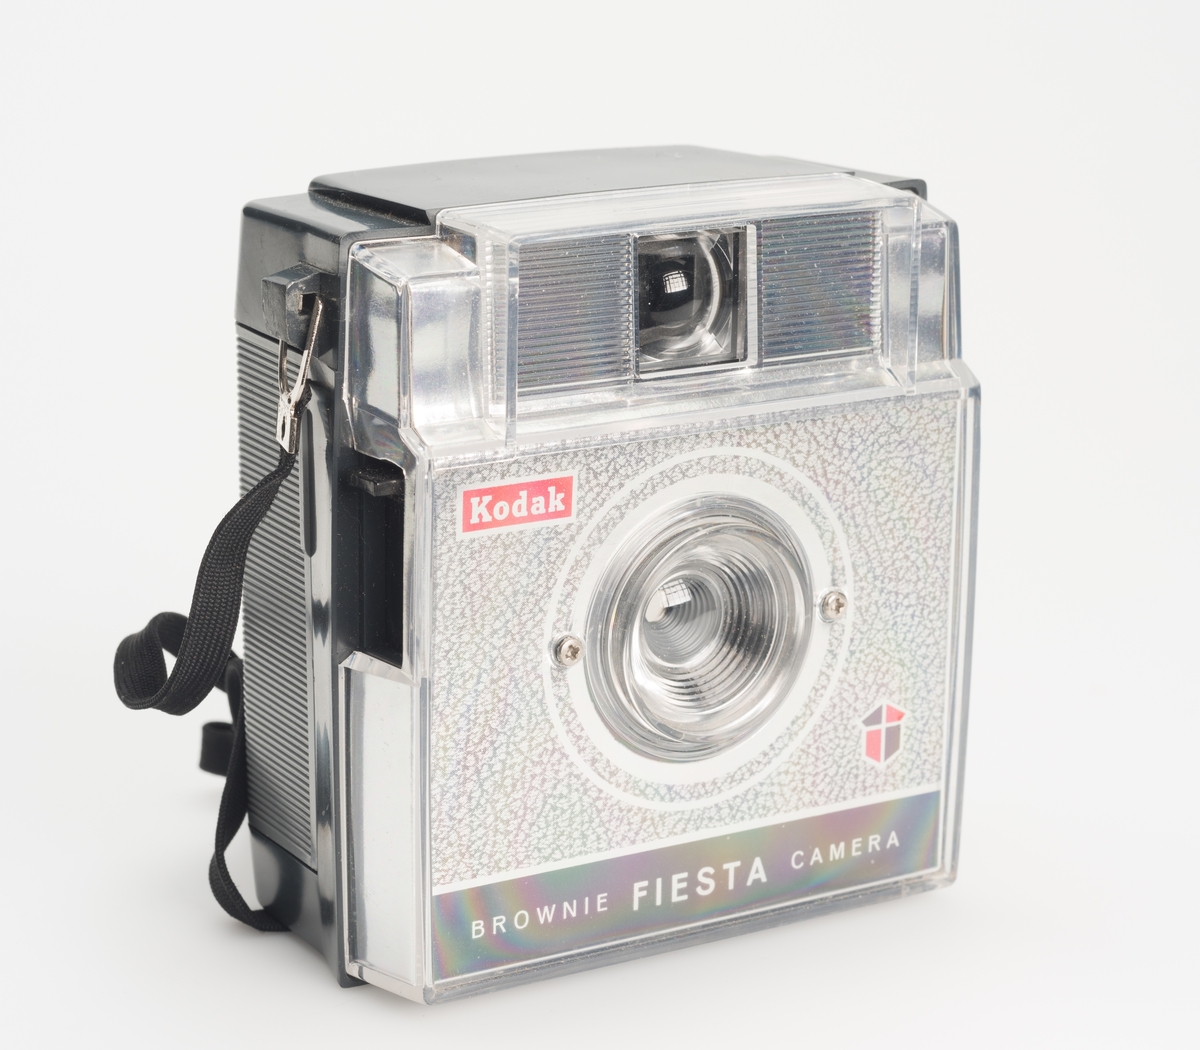 Brownie Fiesta er et enkelt viewfinderkamera med kontaktpunkt for avtagbar blits, produsert av Kodak fra 1962 til 1966.
Filmtype: 127
Bildestørrelse: 1 5/8 x 1 5/8"
Linse: F/11
Lukker: 1/40s